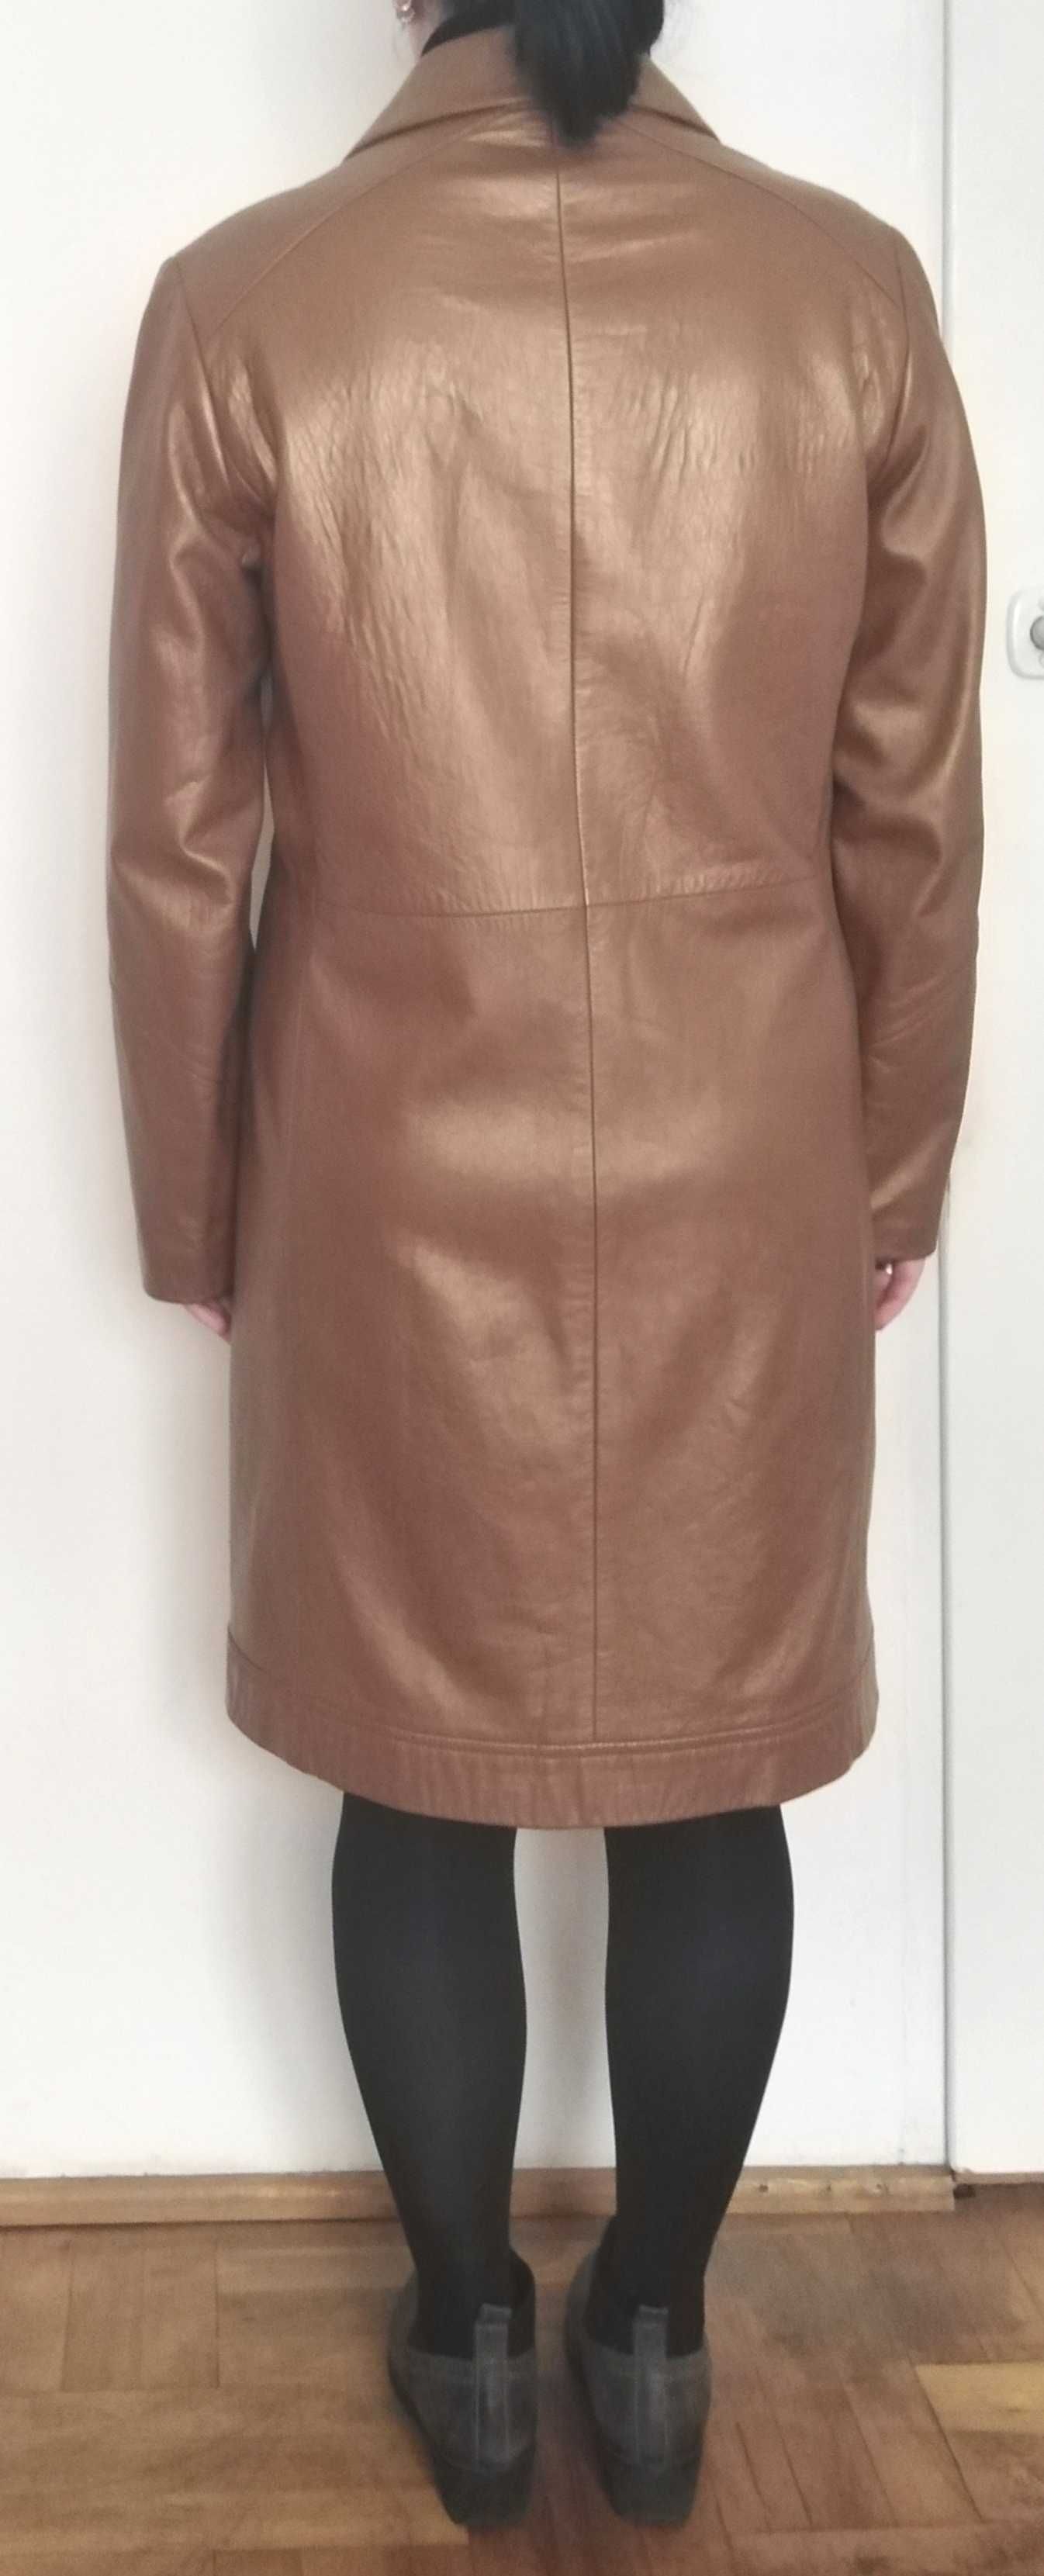 LAURÈL ESCADA jak nowy płaszcz brązowy skóra skórzany 38 40 M L